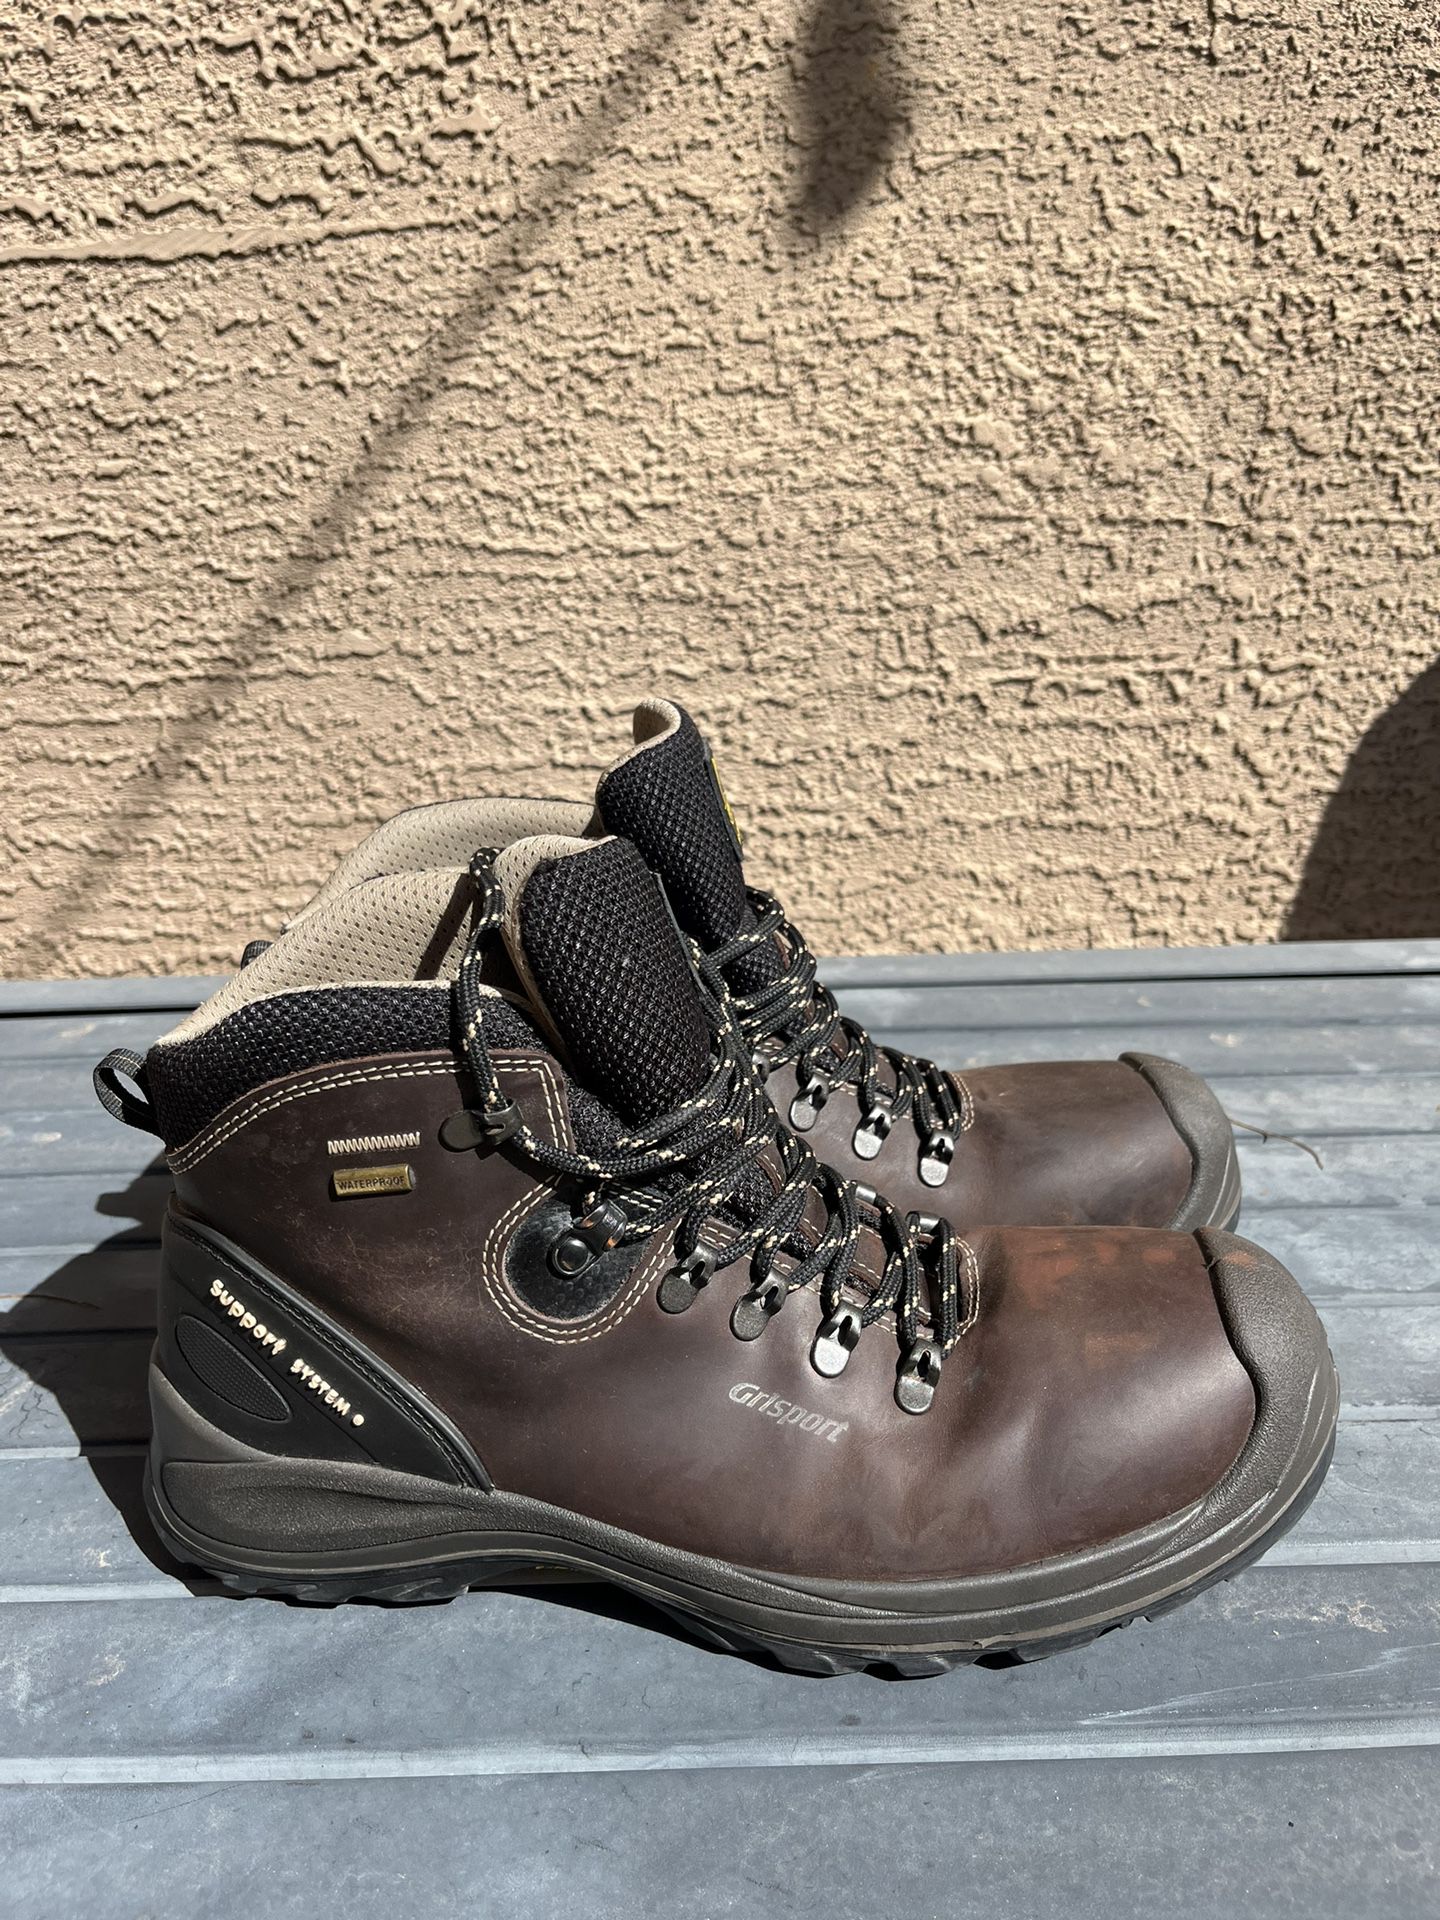 Grisport Waterproof Composite Toe Work Boots